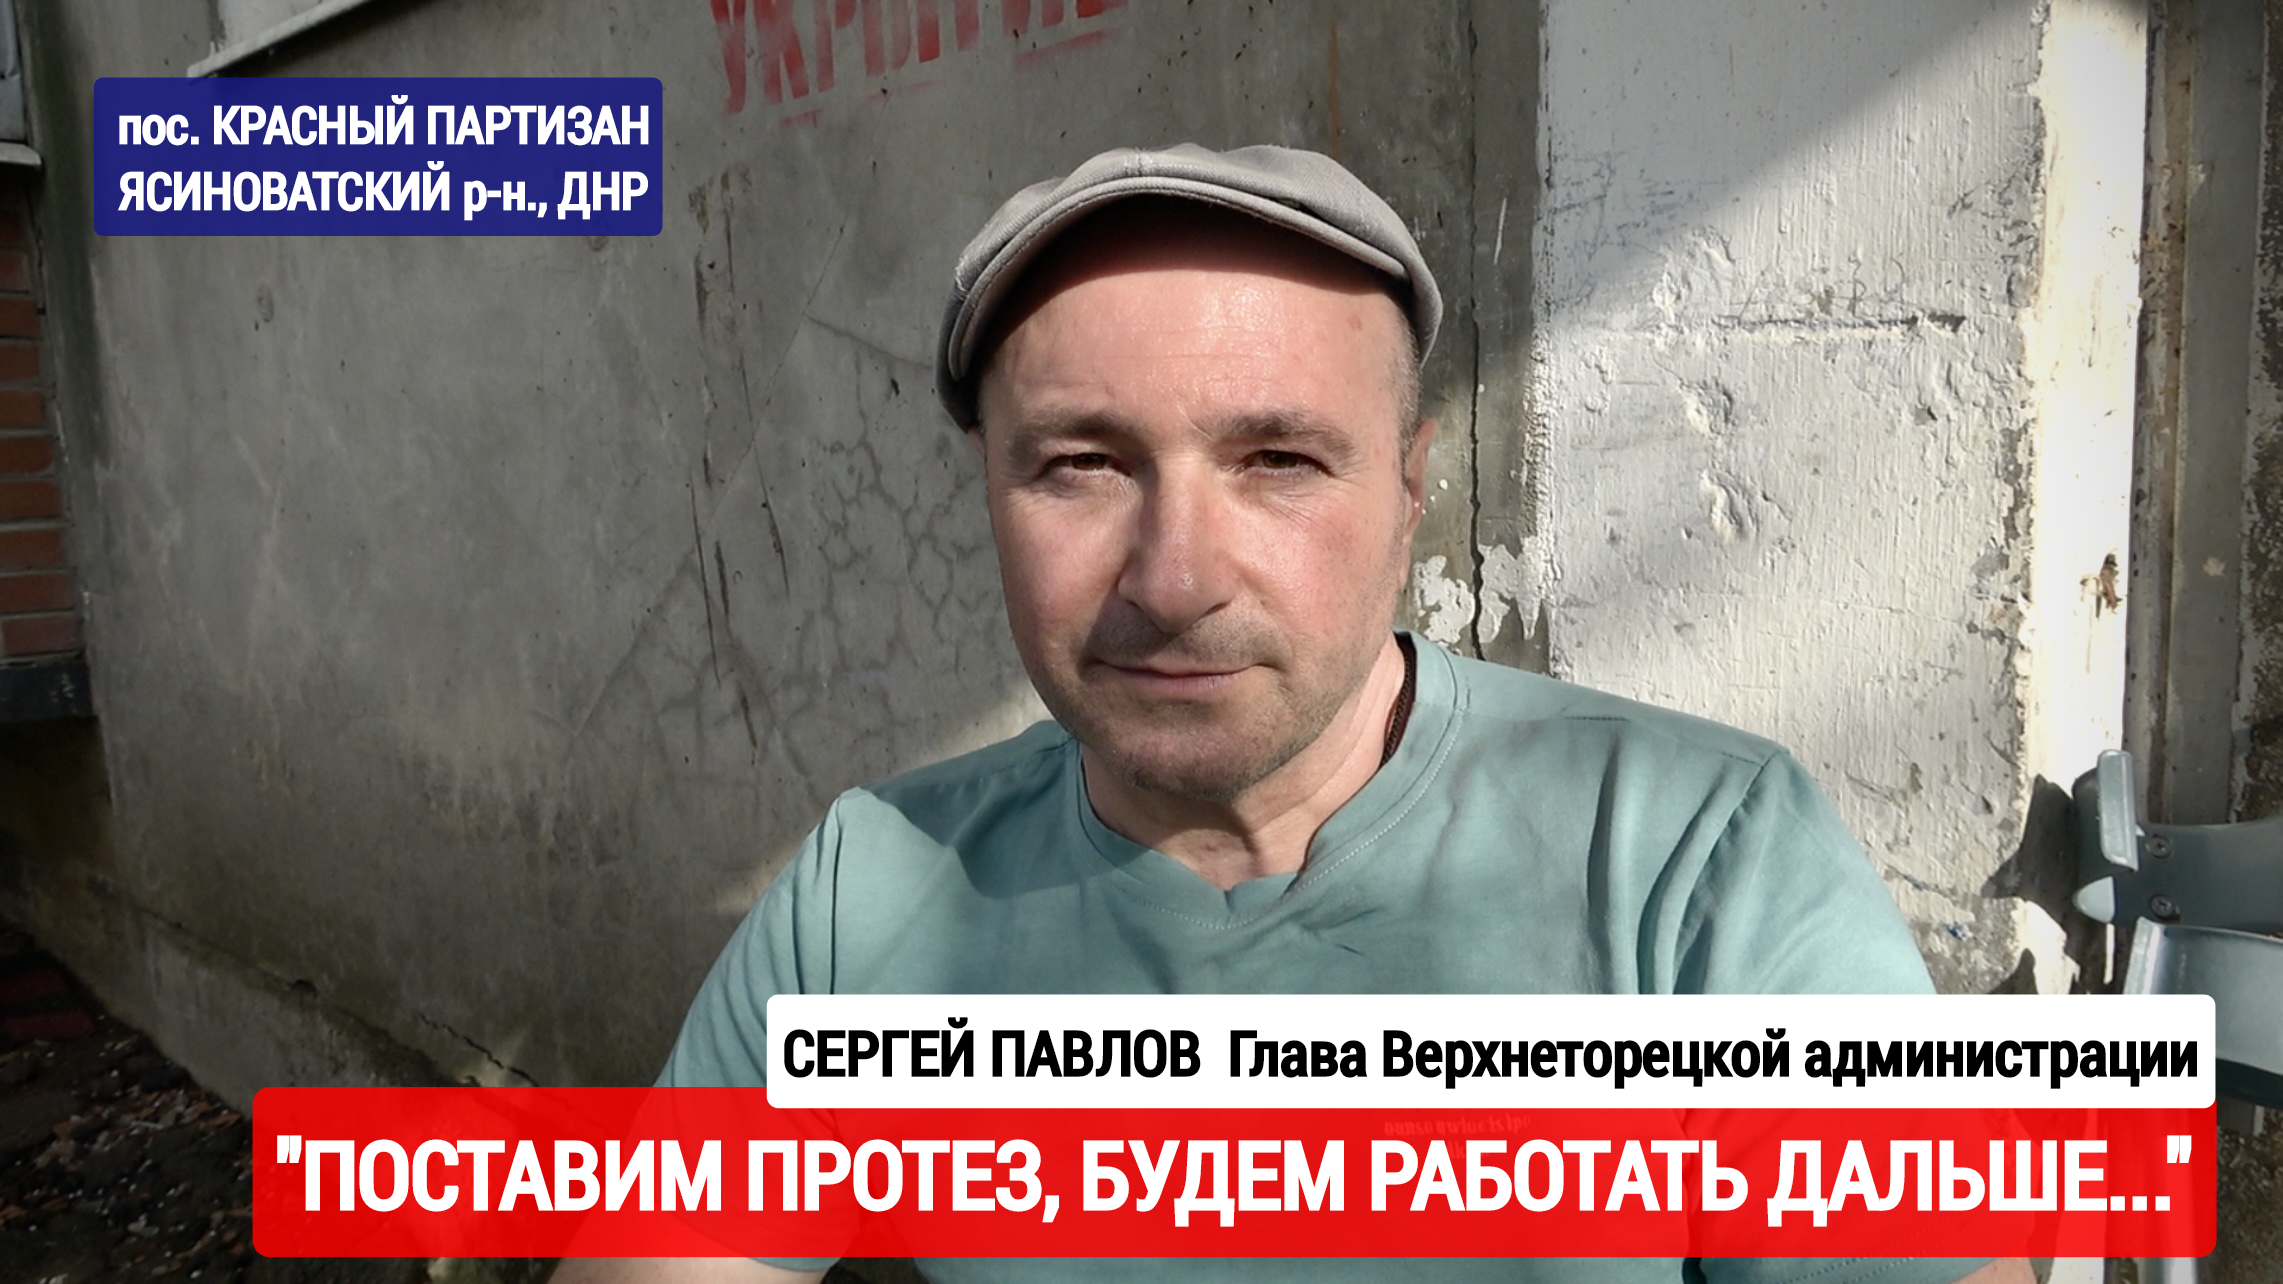 "Поставим протез, будем работать дальше" Сергей Павлов, Глава Верхнеторецкой администрации